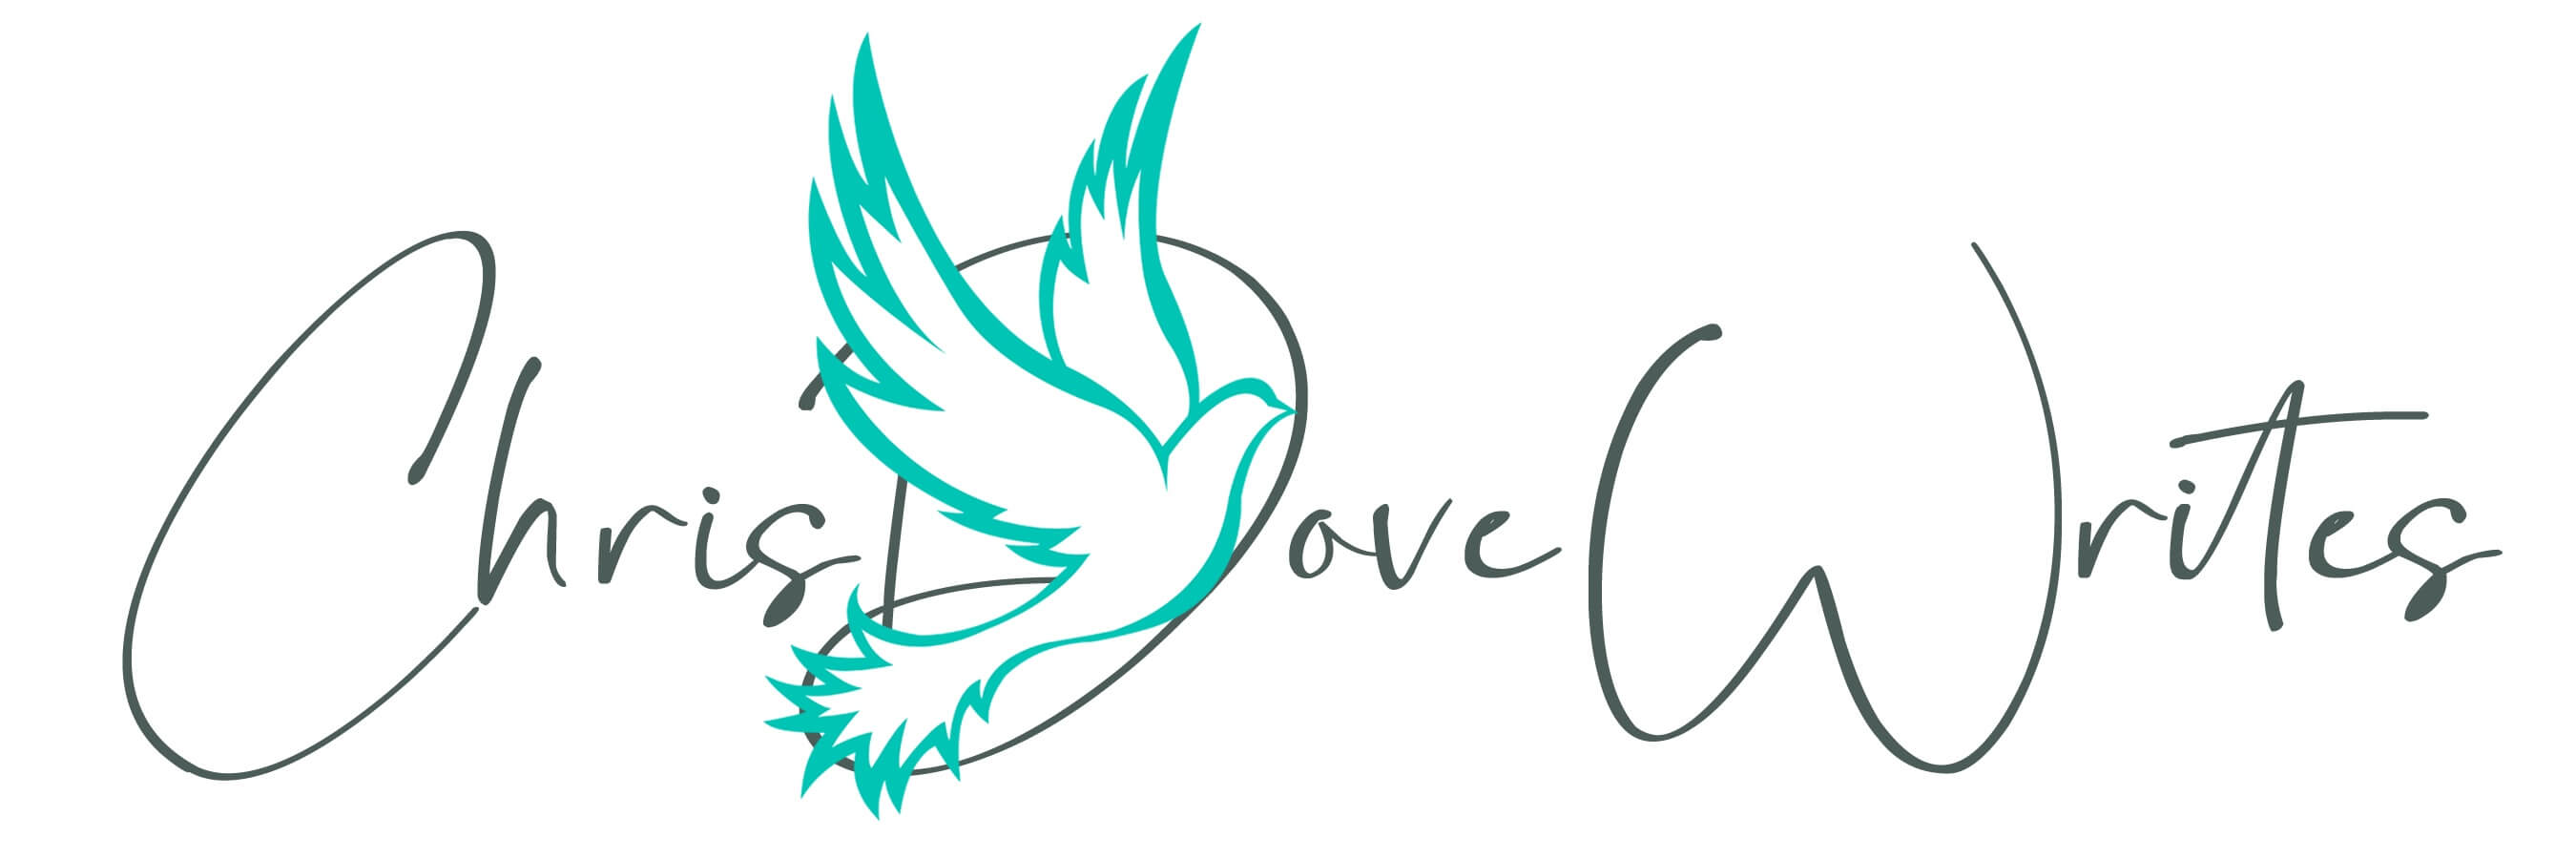 Chris Elle Dove logo